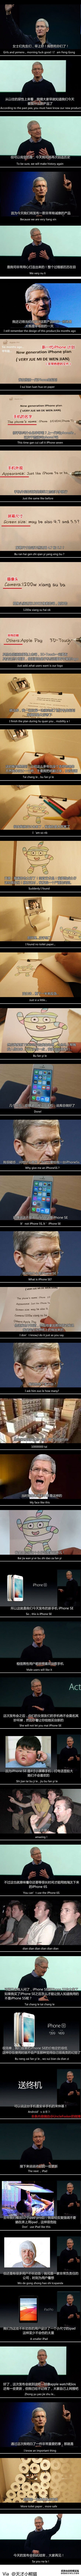 关于iPhone SE 苹果真是下了一手好棋！ 